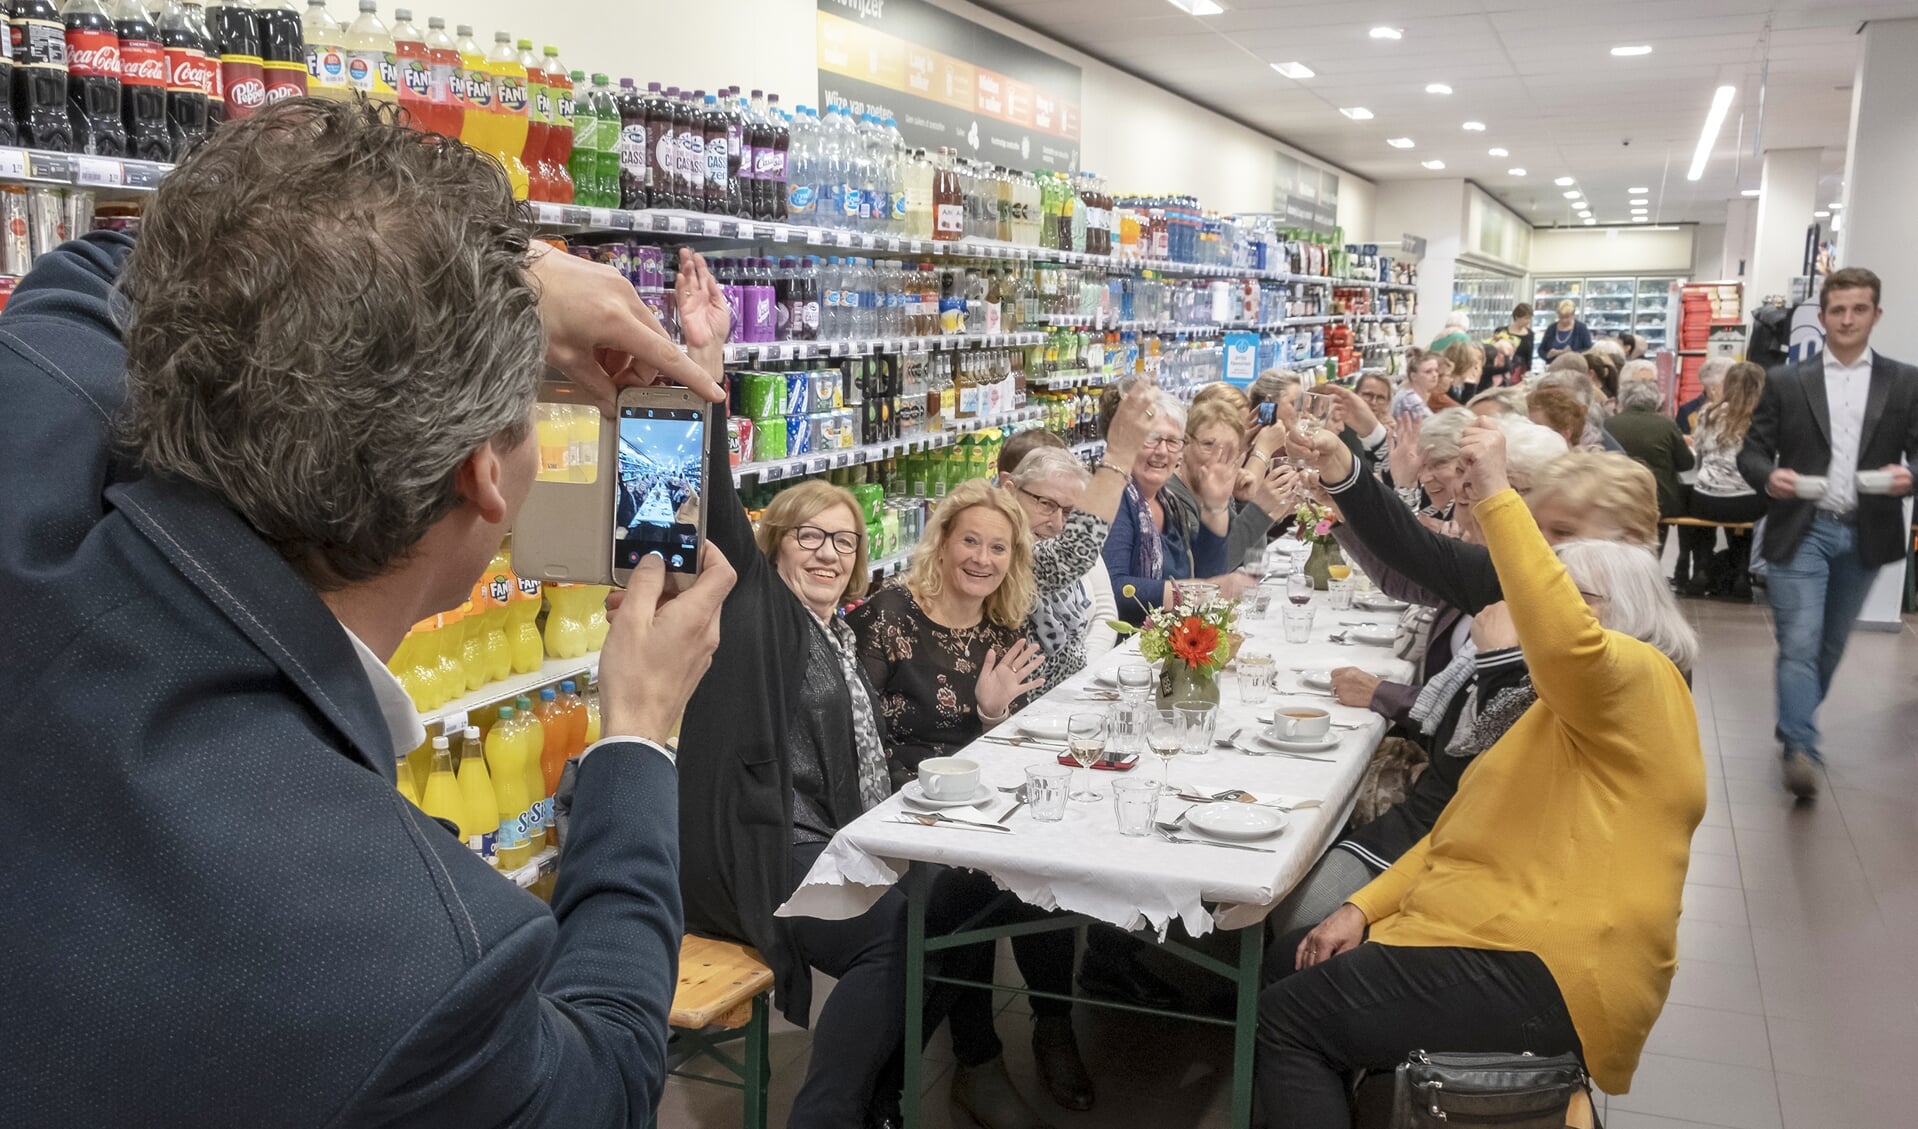 • Supermarkteigenaar Erik Wiersma van de Albert Heijn in Krimpen aan de Lek neemt een foto van de gasten die hun eten kregen geserveerd aan een lange eettafel. 